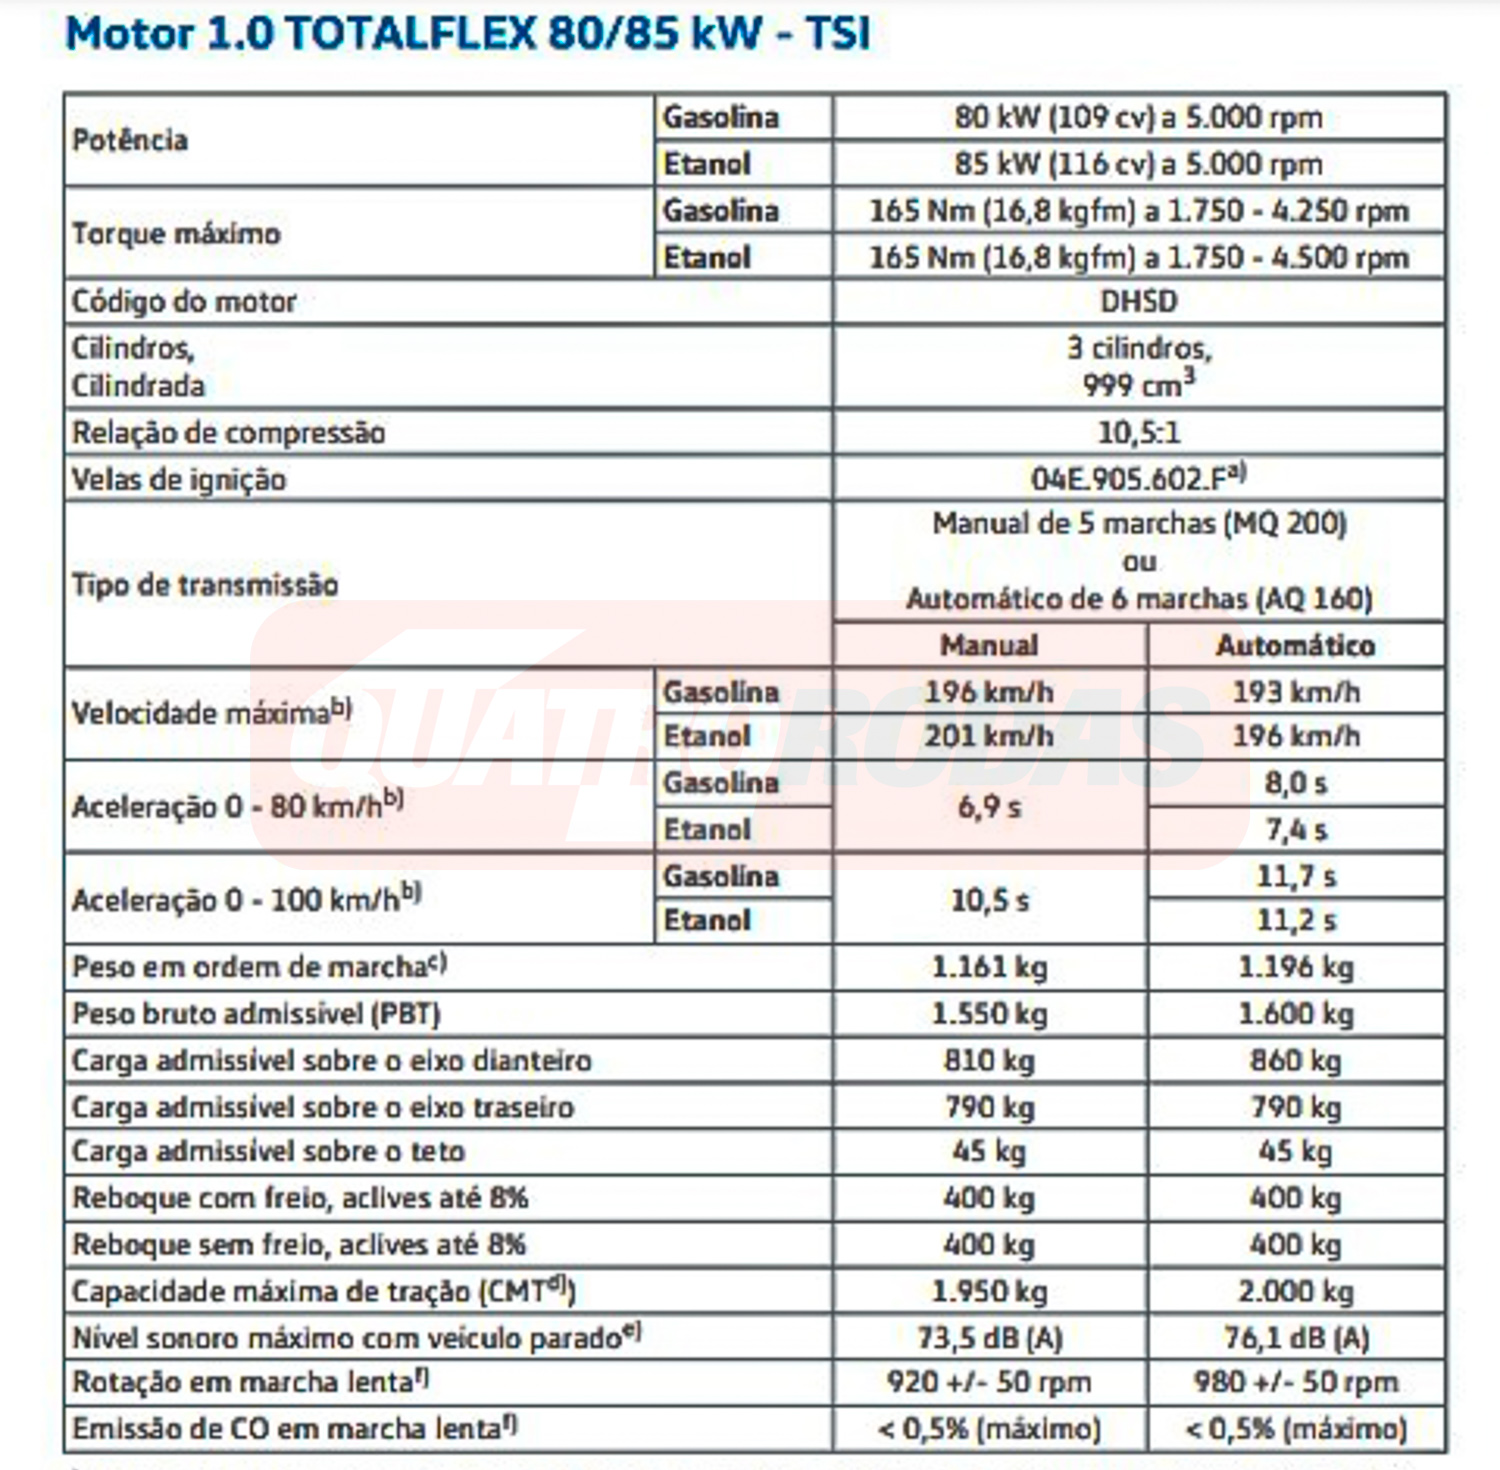 Ficha técnica do Volkswagen Virtus TSI automático e manual